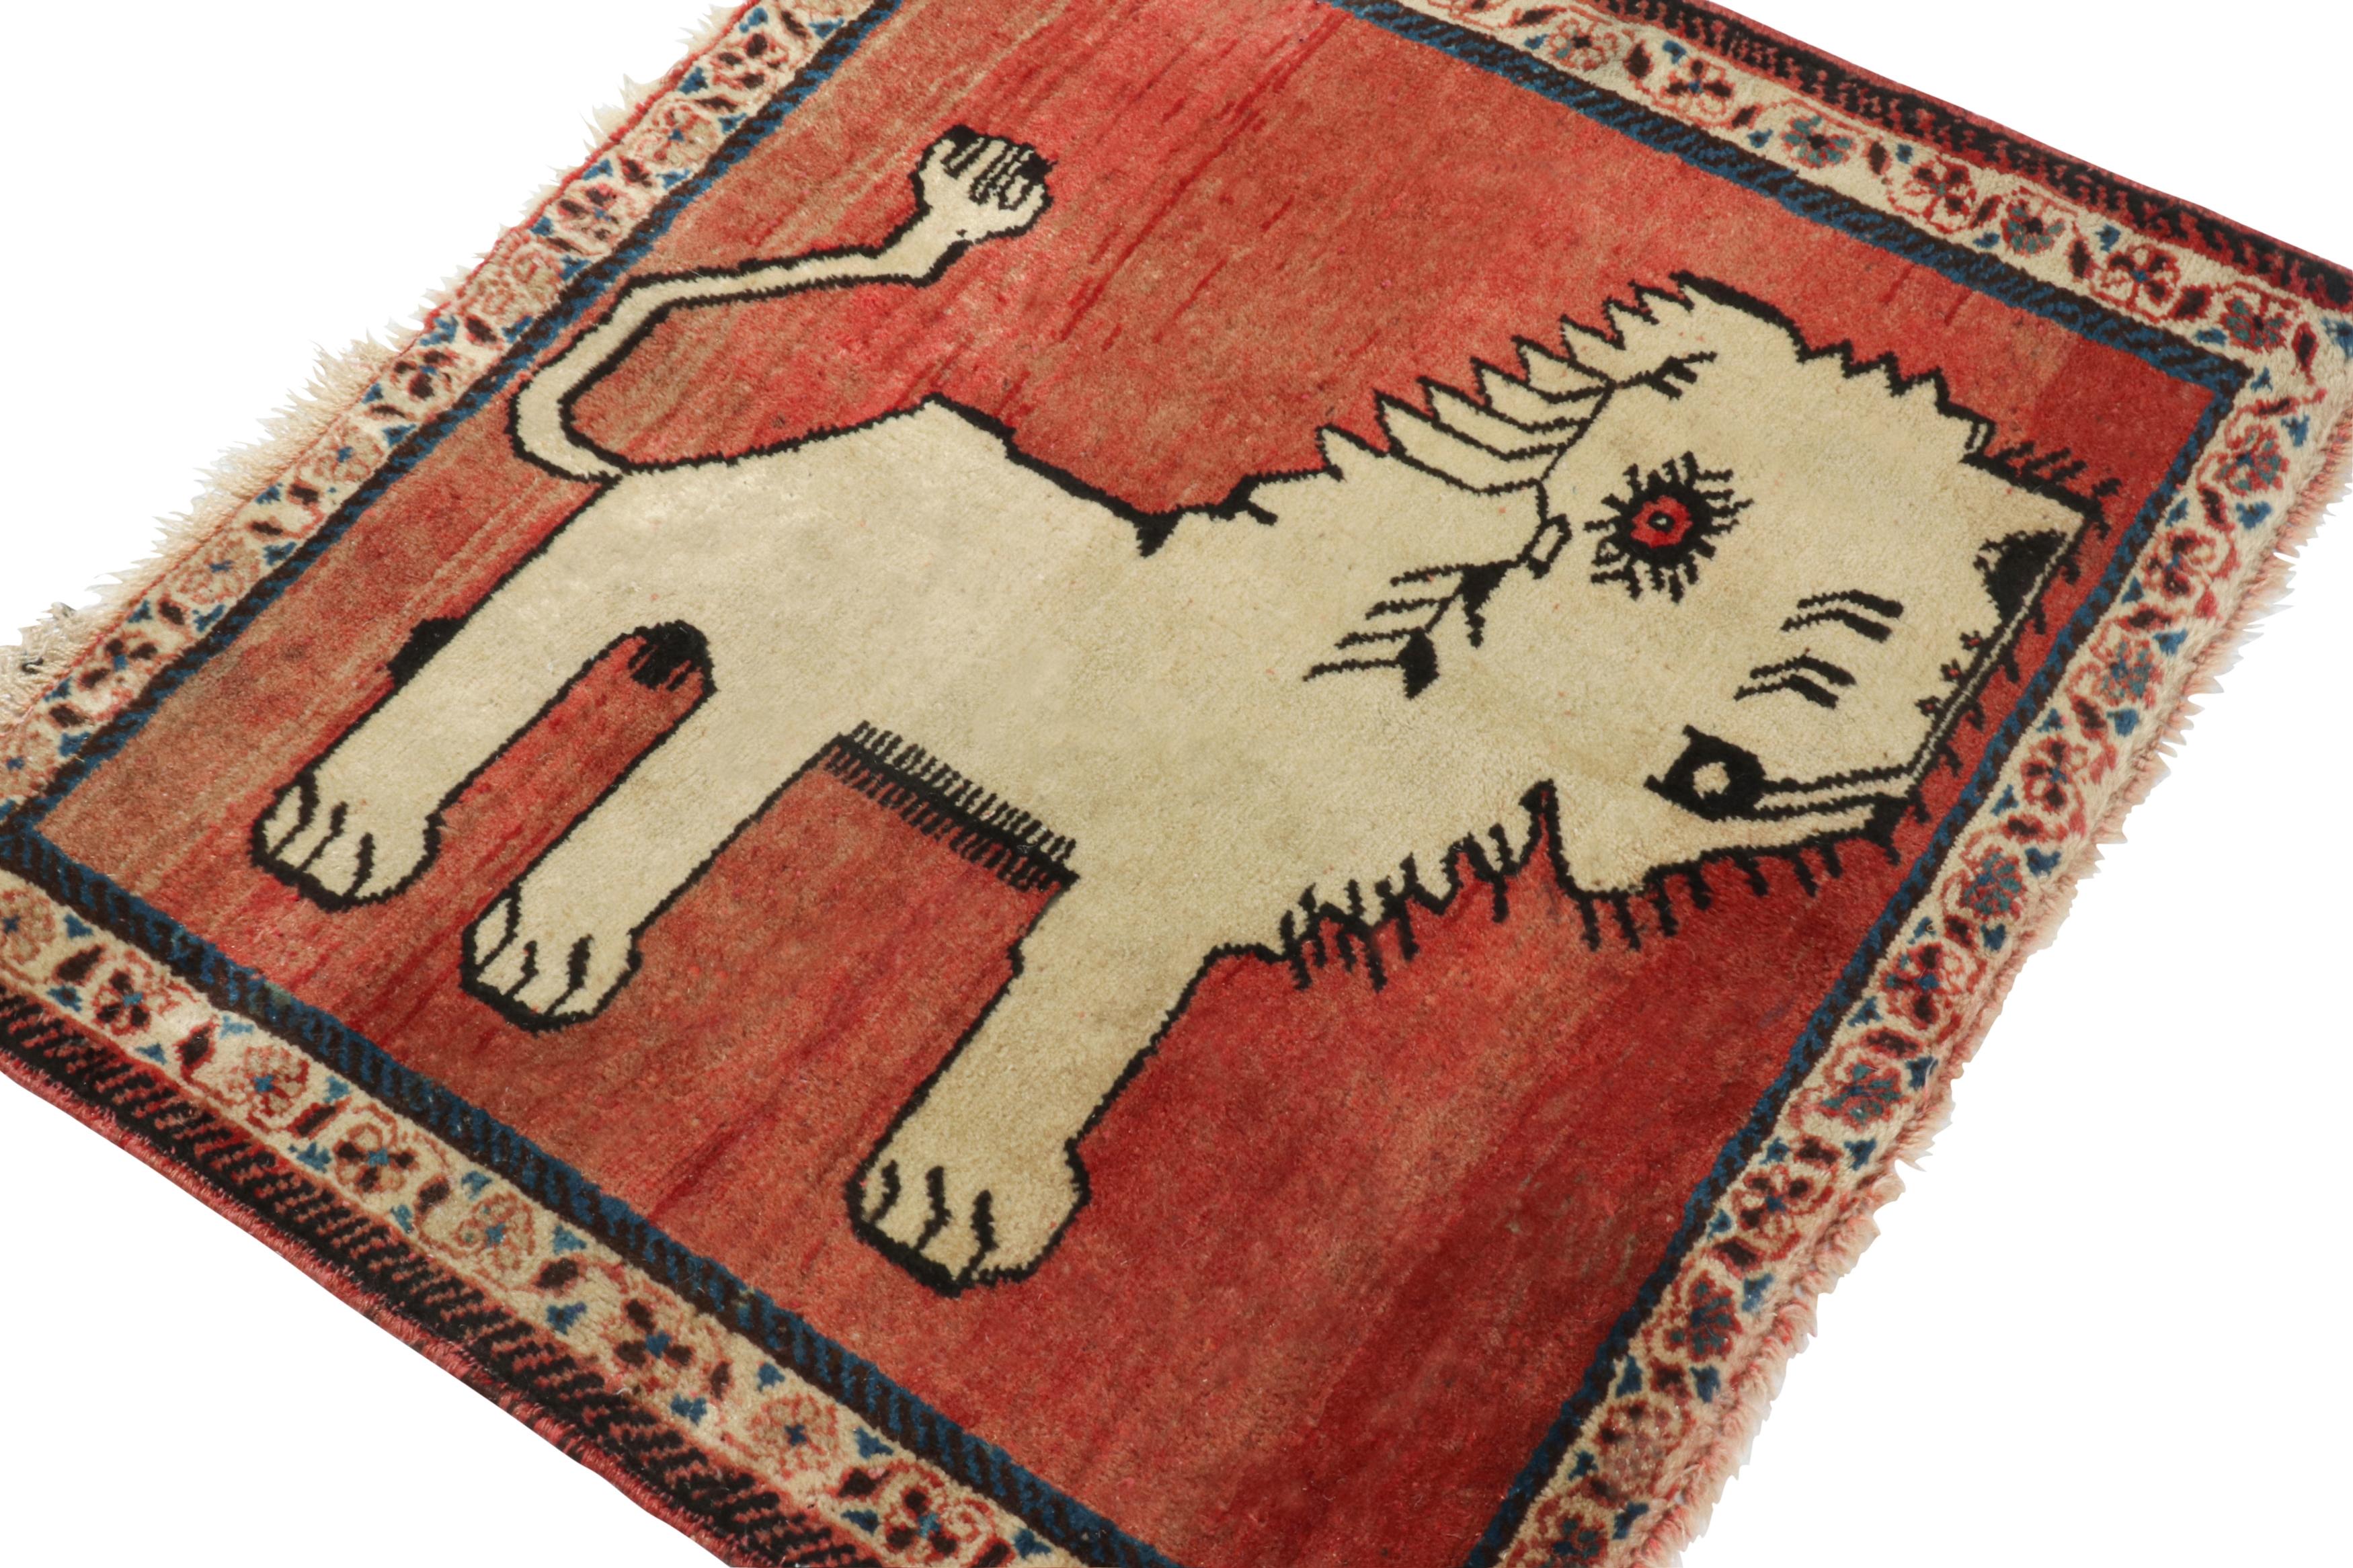 Ce tapis persan vintage 2x2 Gabbeh fait partie des dernières entrées dans les curations tribales rares de Rug & Kilim. Noué à la main en laine vers 1950-1960.

Plus d'informations sur le design :

Cette provenance tribale est l'un des styles